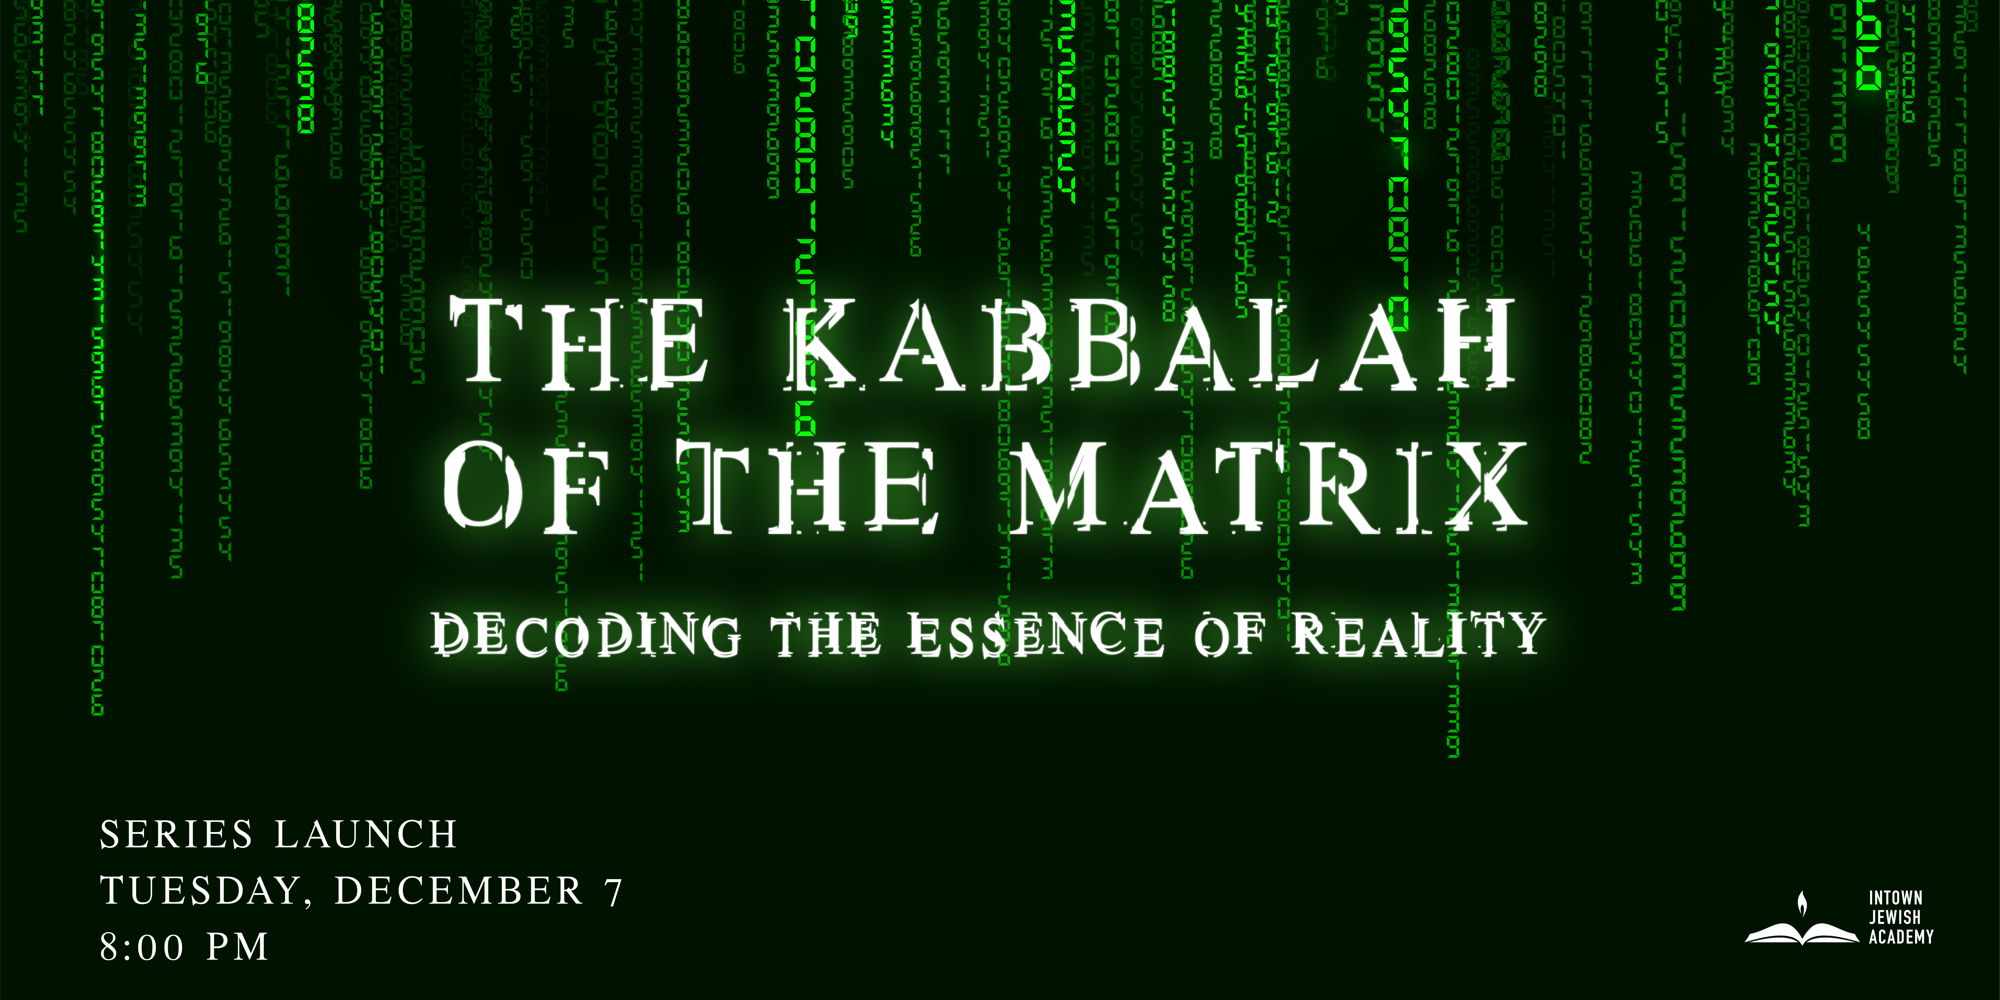 The Kabbalah of the Matrix promotional image